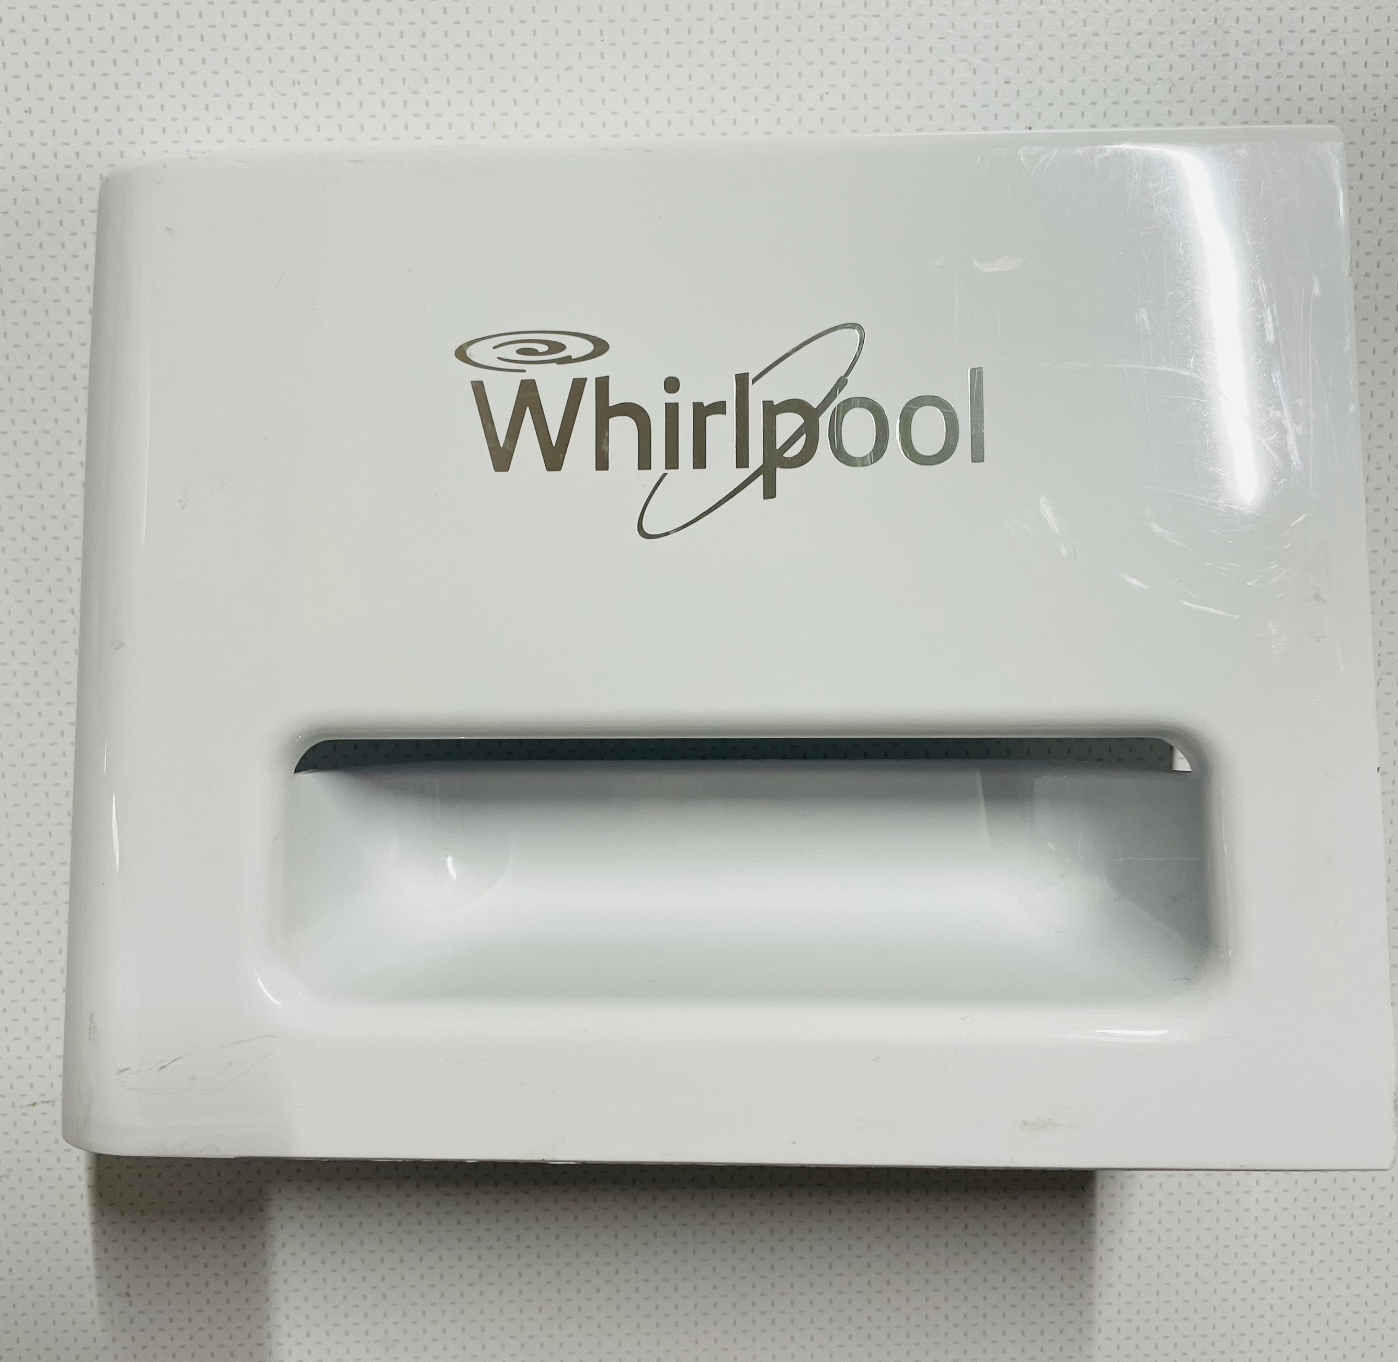 Vanntank/kondensbeholder sett til Whirlpool tørketromel